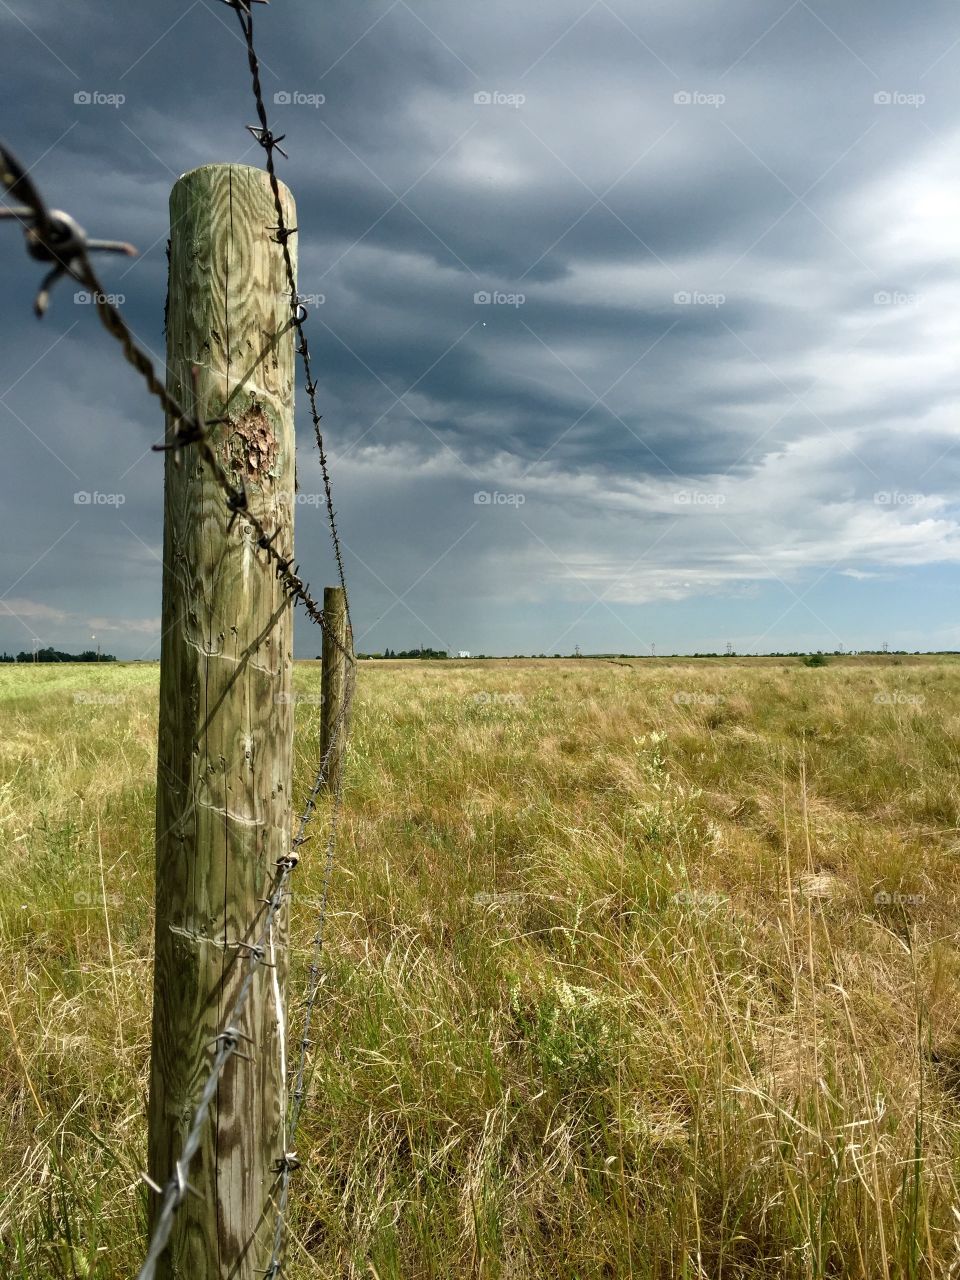 The coming storm. Taken in a farm field in Saskatchewan, Canada